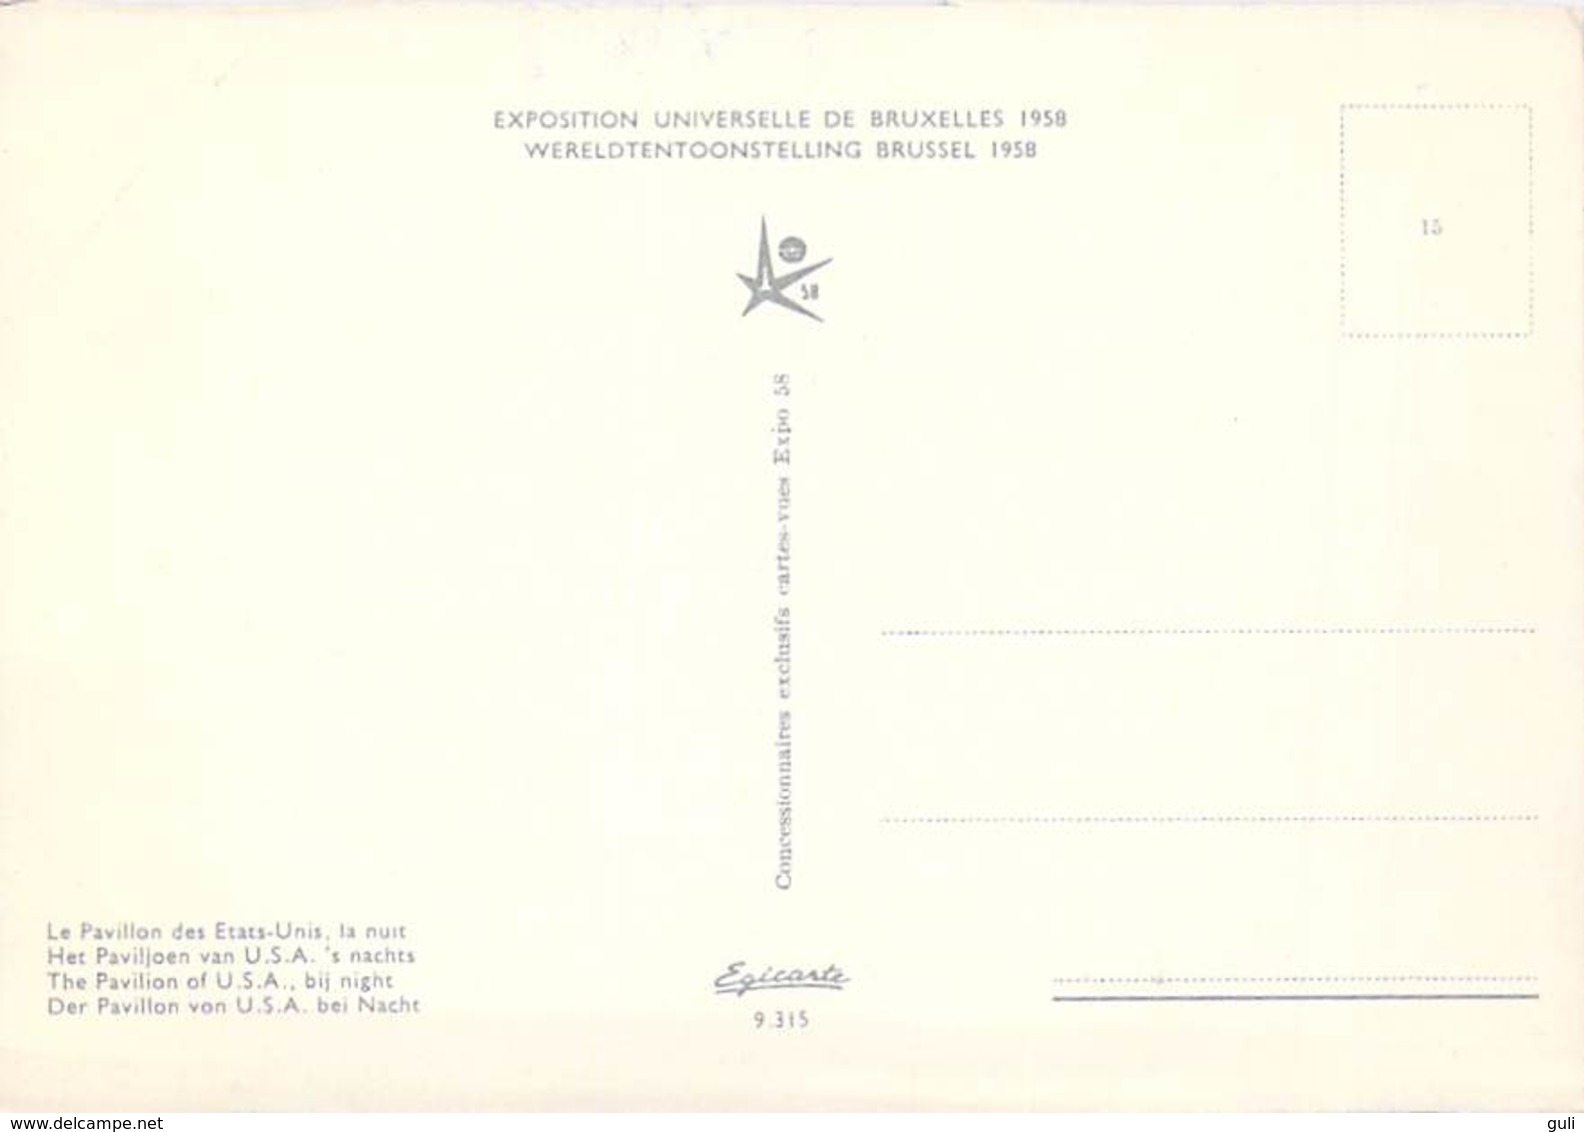 Belgique > BRUXELLES  (Laeken) Exposition Universelle 1958- Lot de 19 cartes cpsm, voir scan R / V des 19 cartes